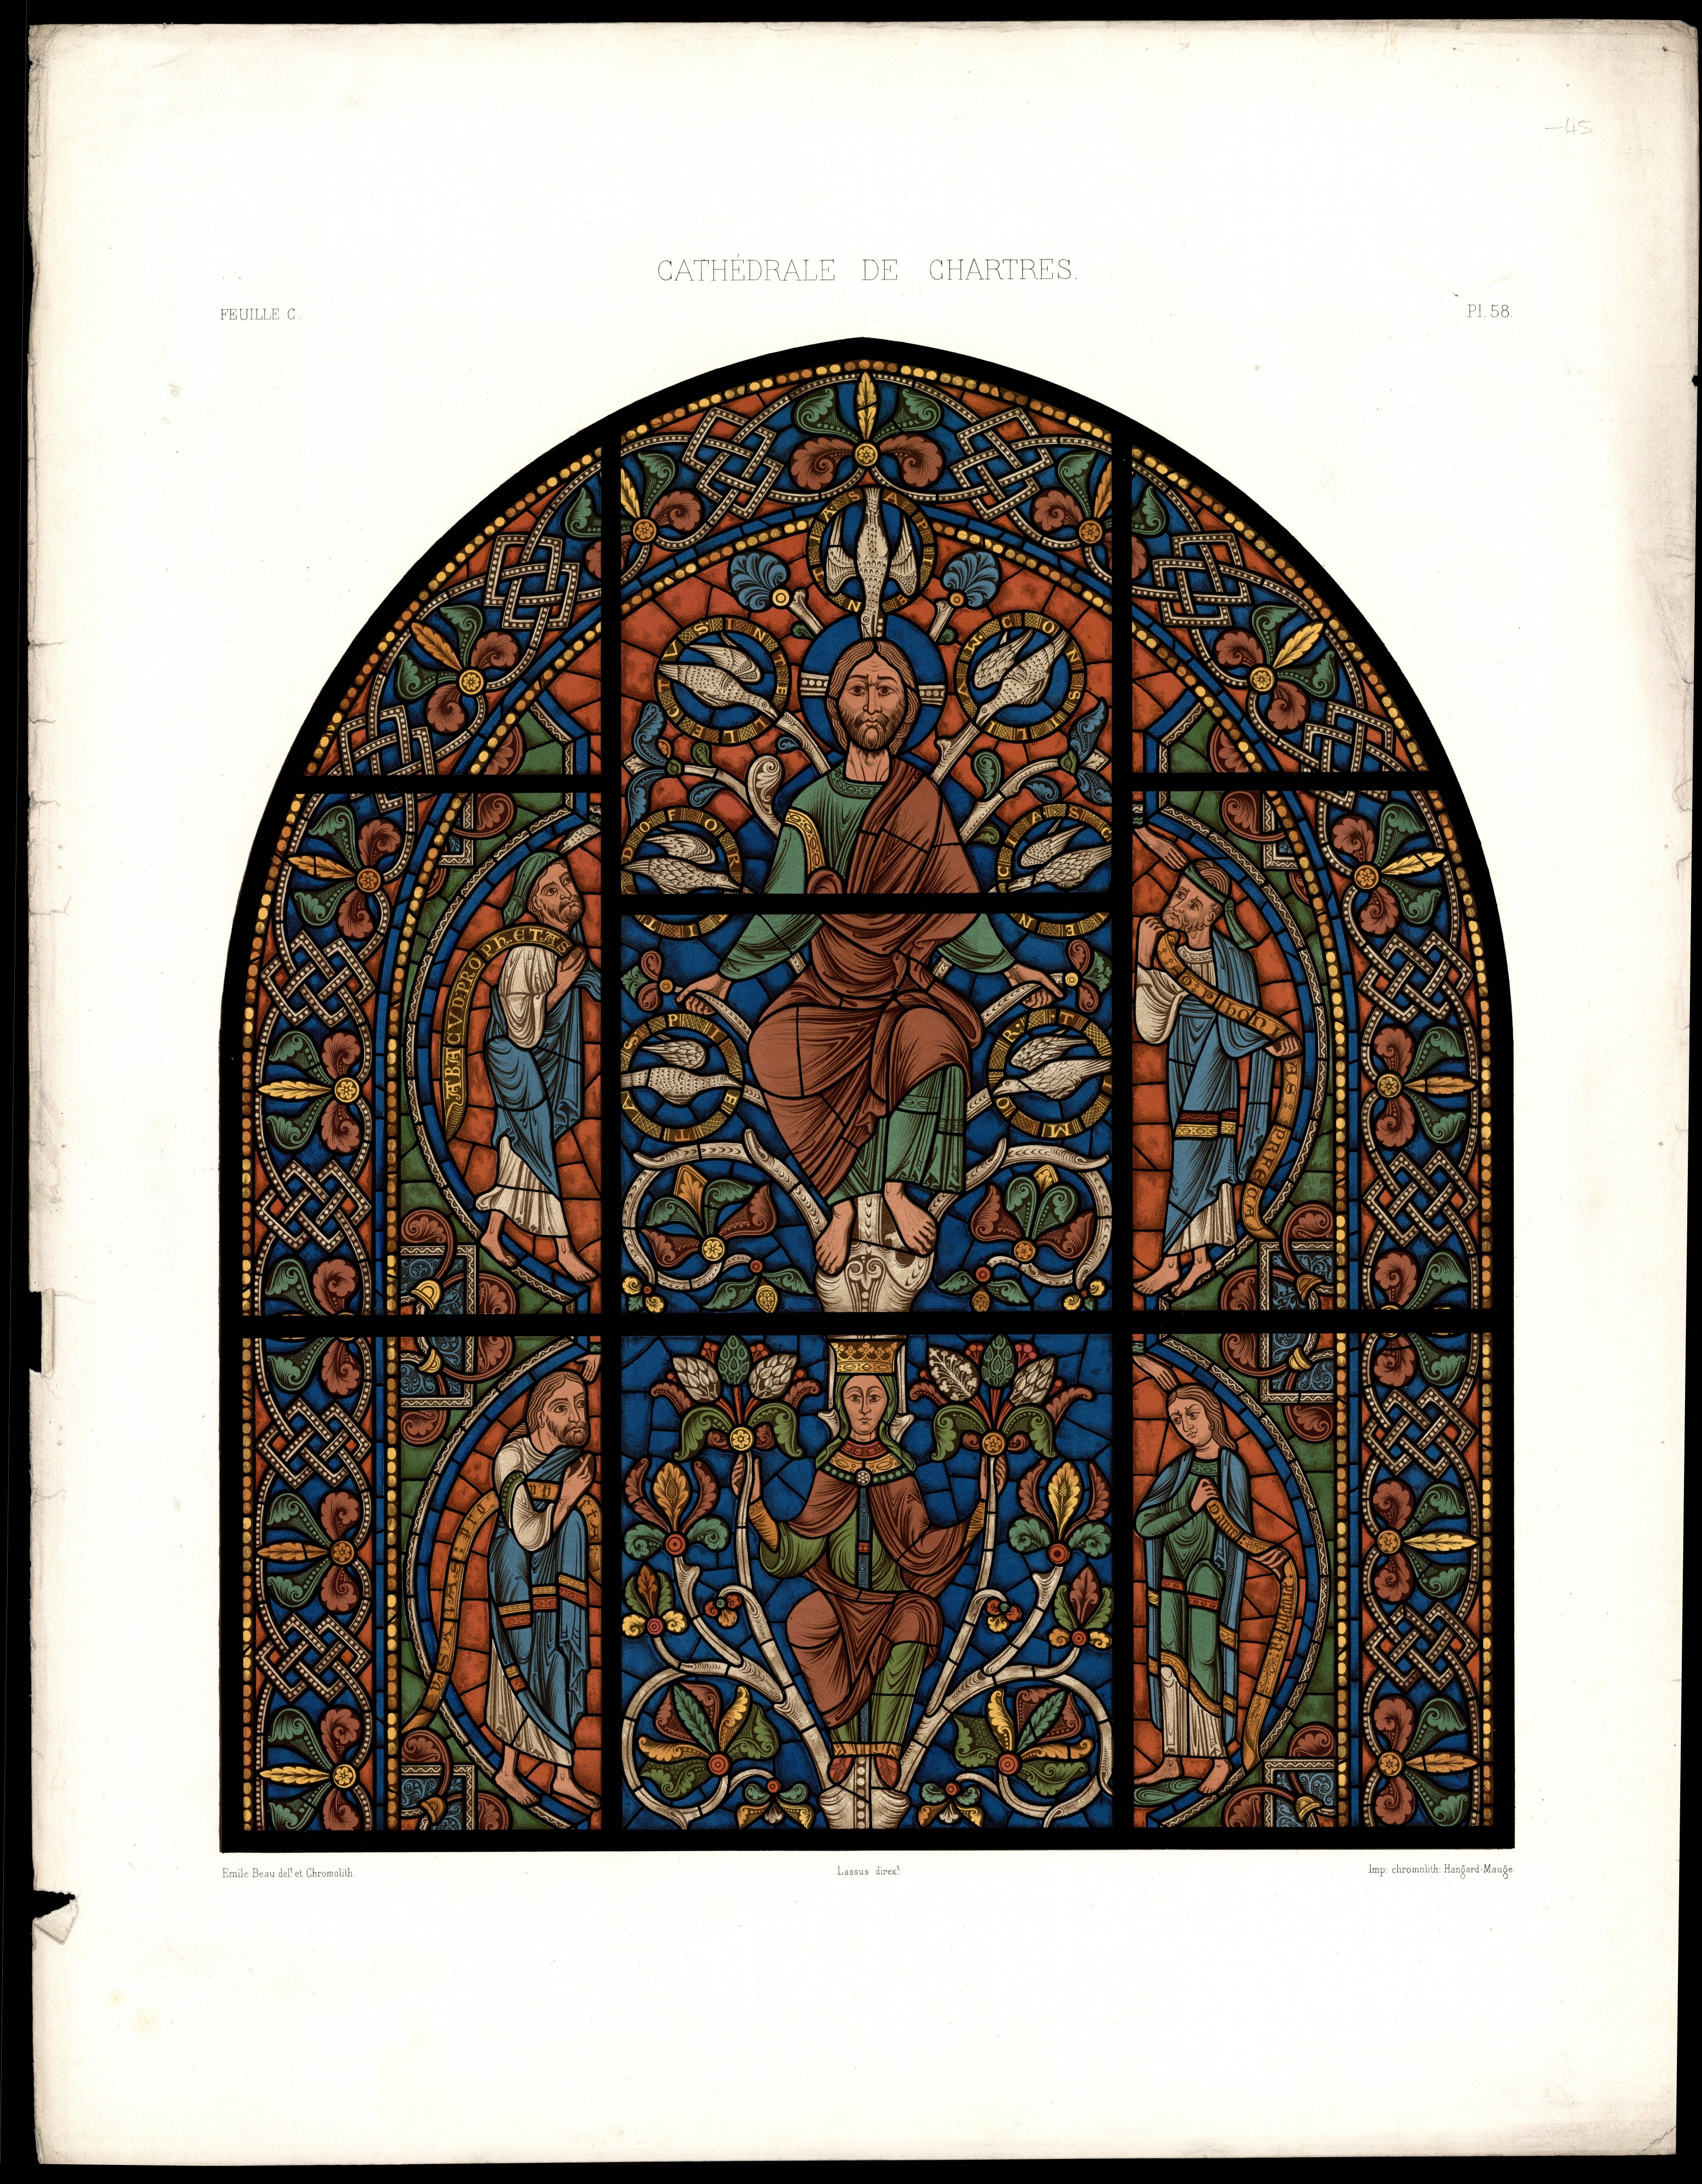 Monografie de la Cathedrale de Chartres - Atlas - Vitrail del arbre de Jesse Feuille C - Chromolithographie